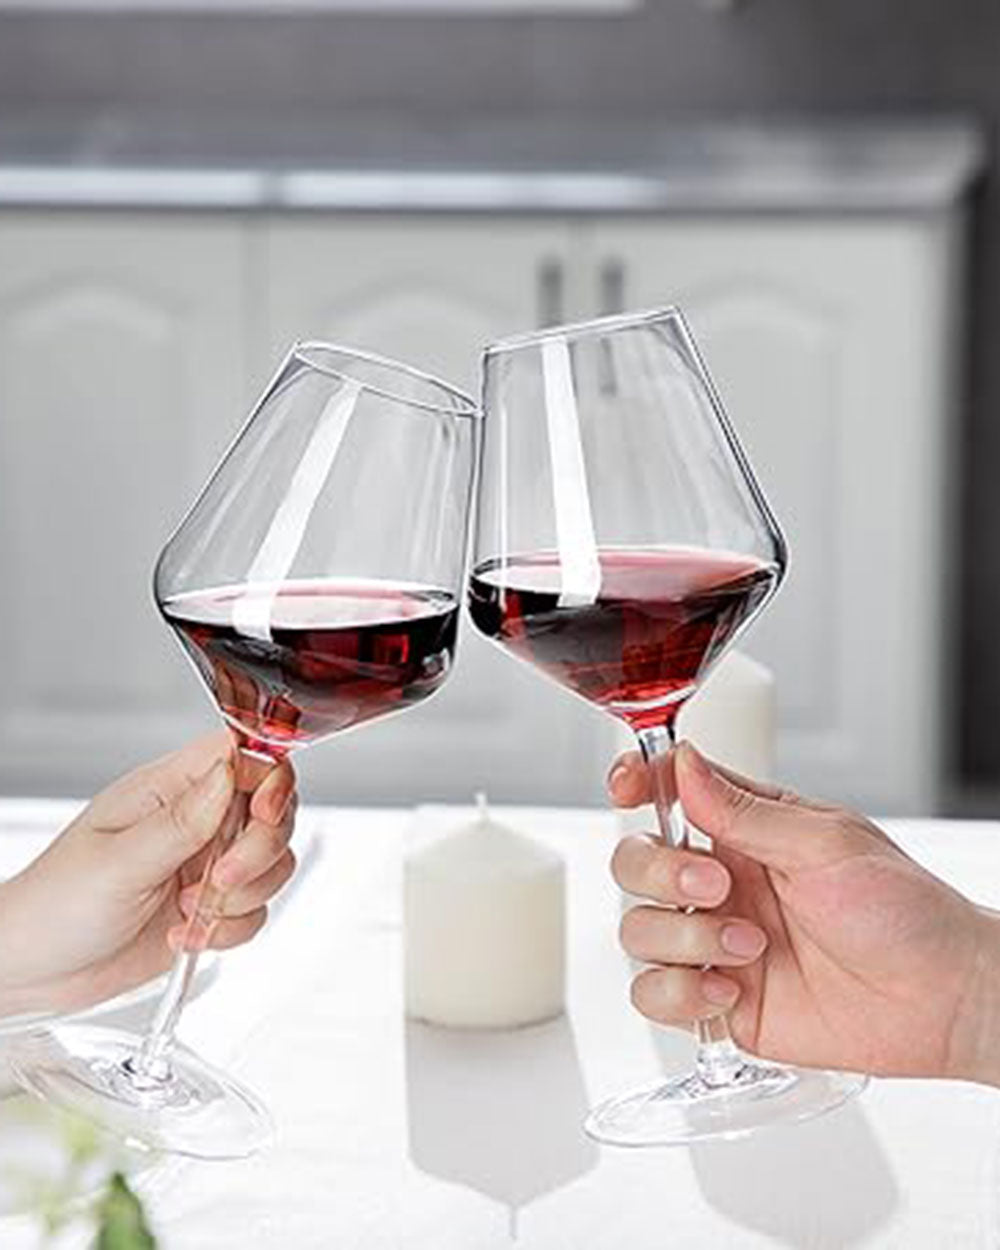 Crystal Wine Glasses Set of 6 Amisglass